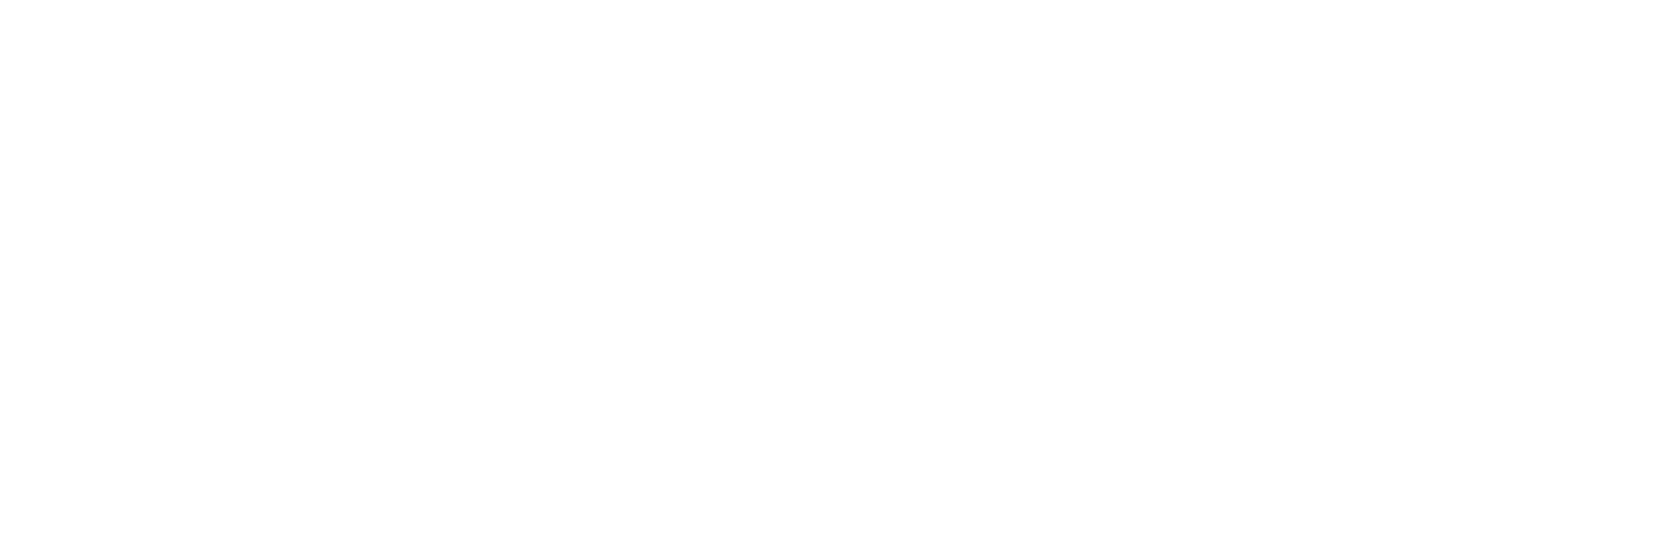 Morvel_Logo-01.png